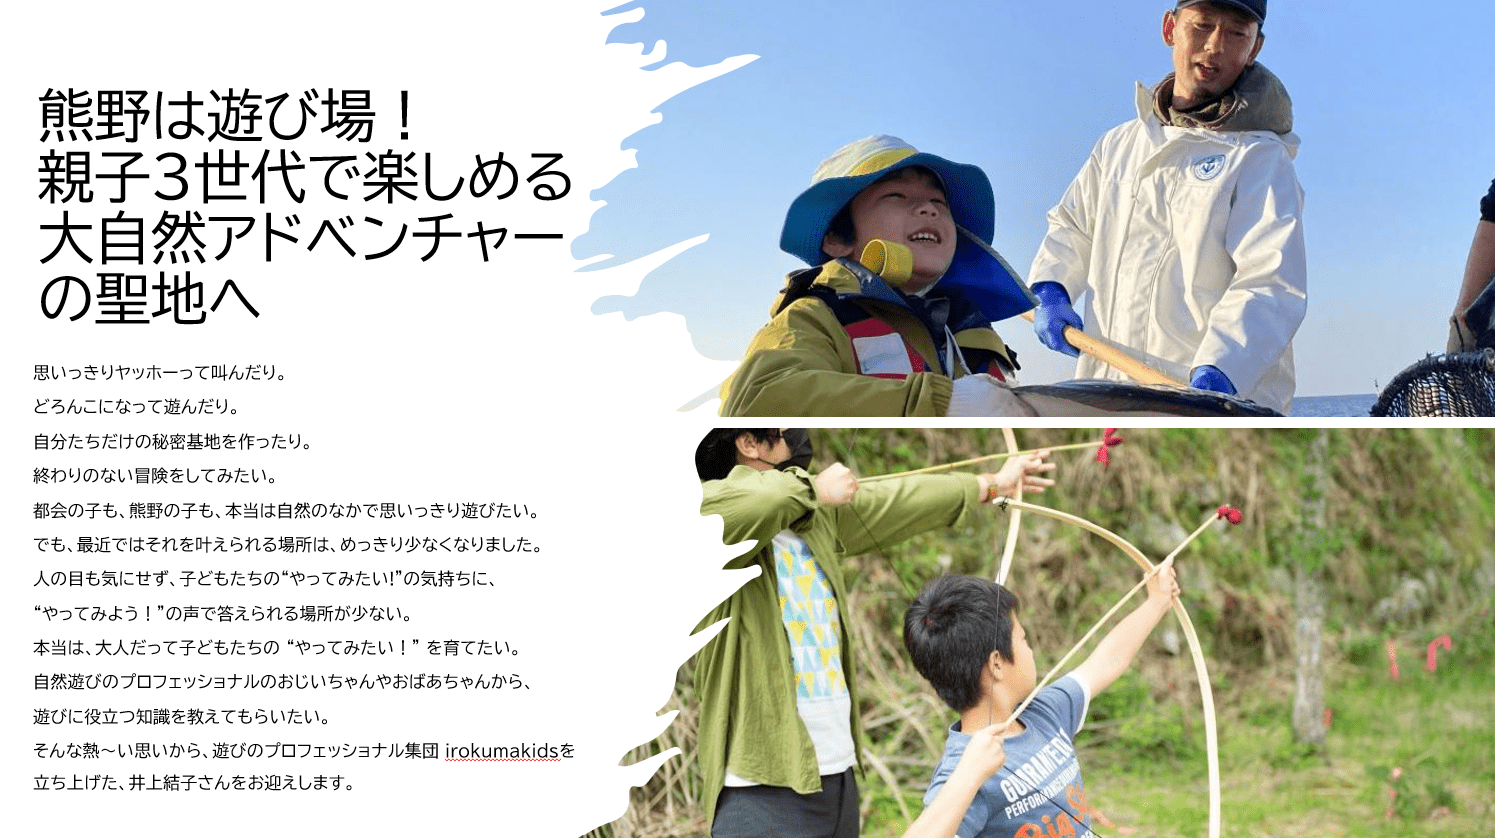 熊野市観光協会presents!「熊野は遊び場！親子3世代で楽しめる大自然アドベンチャーの聖地へ」